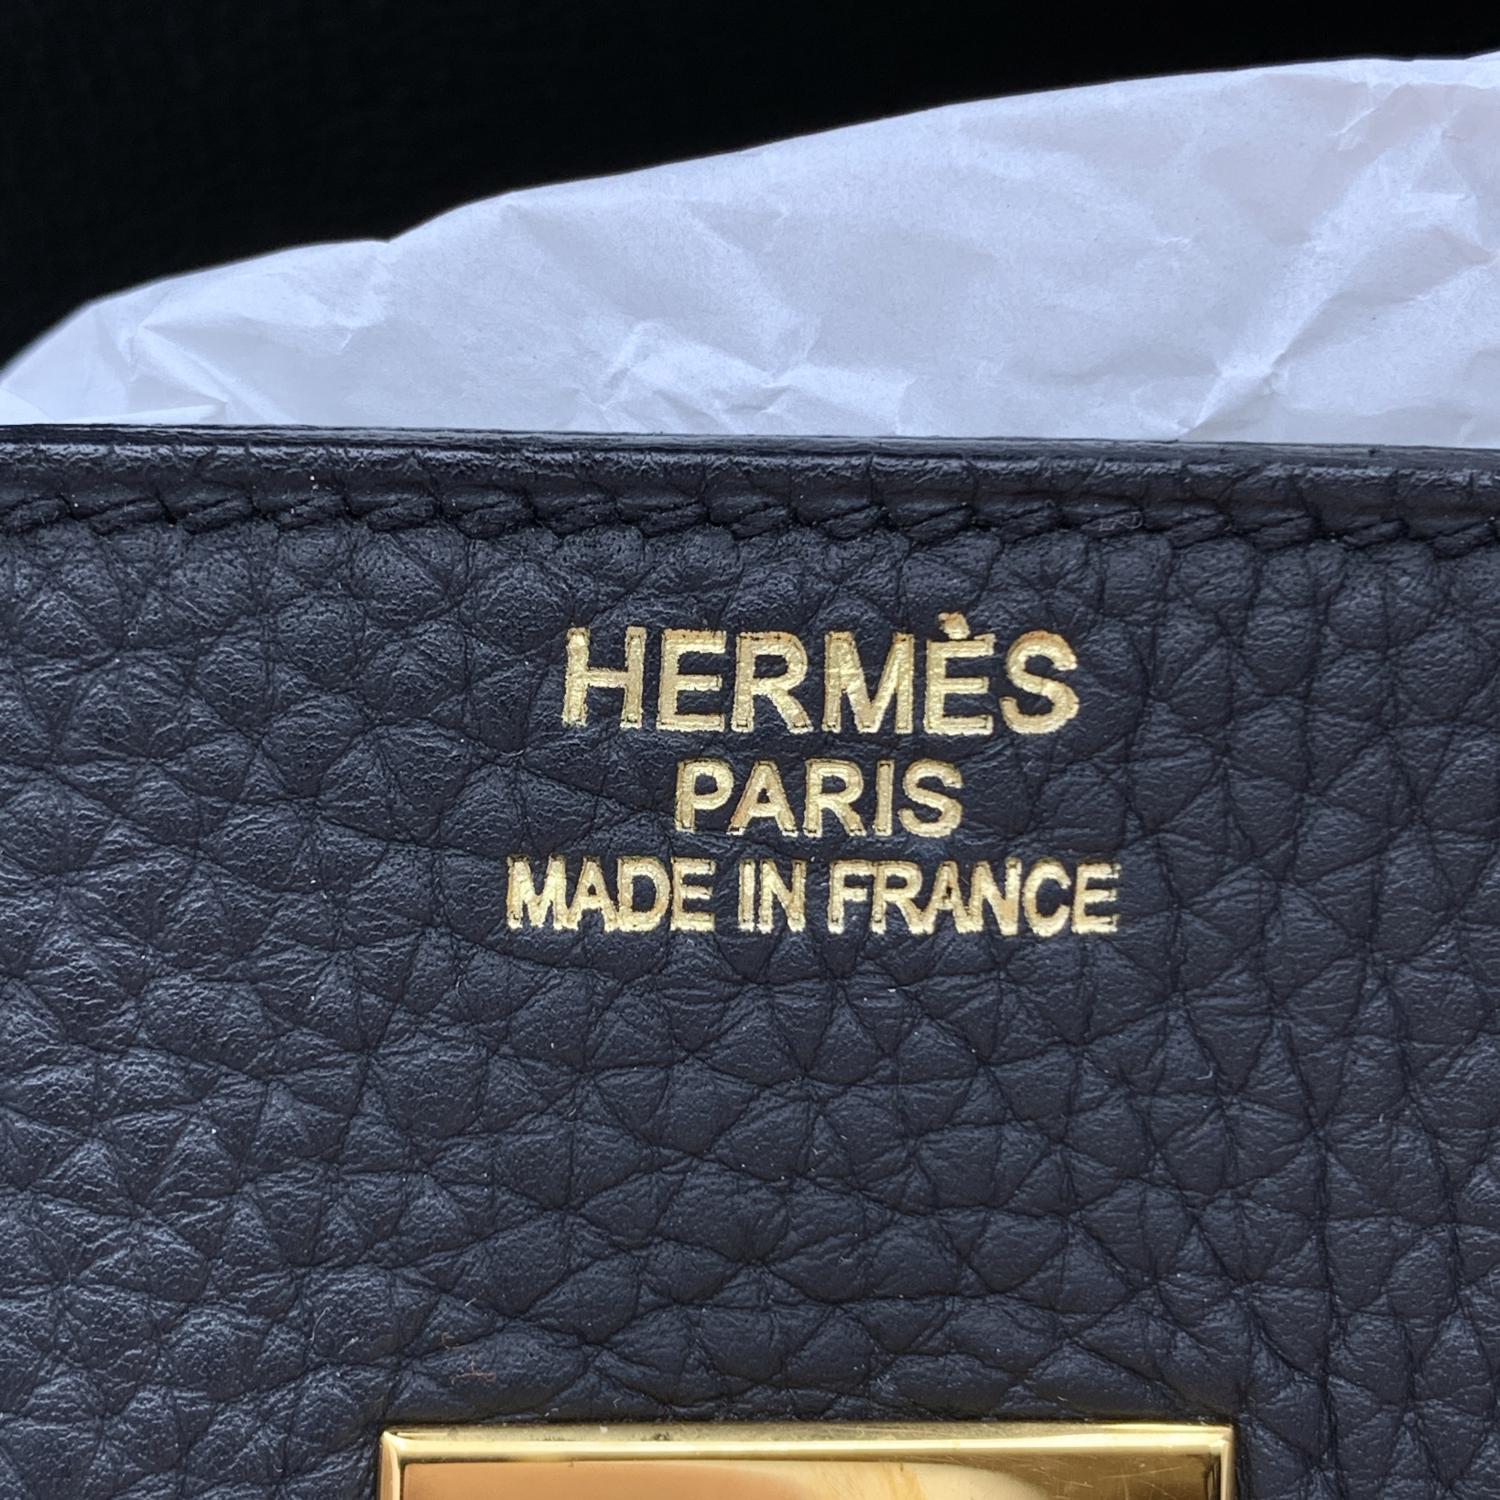 Women's Hermes Black Clemence Leather Birkin 35 Top Handle Bag Satchel Handbag